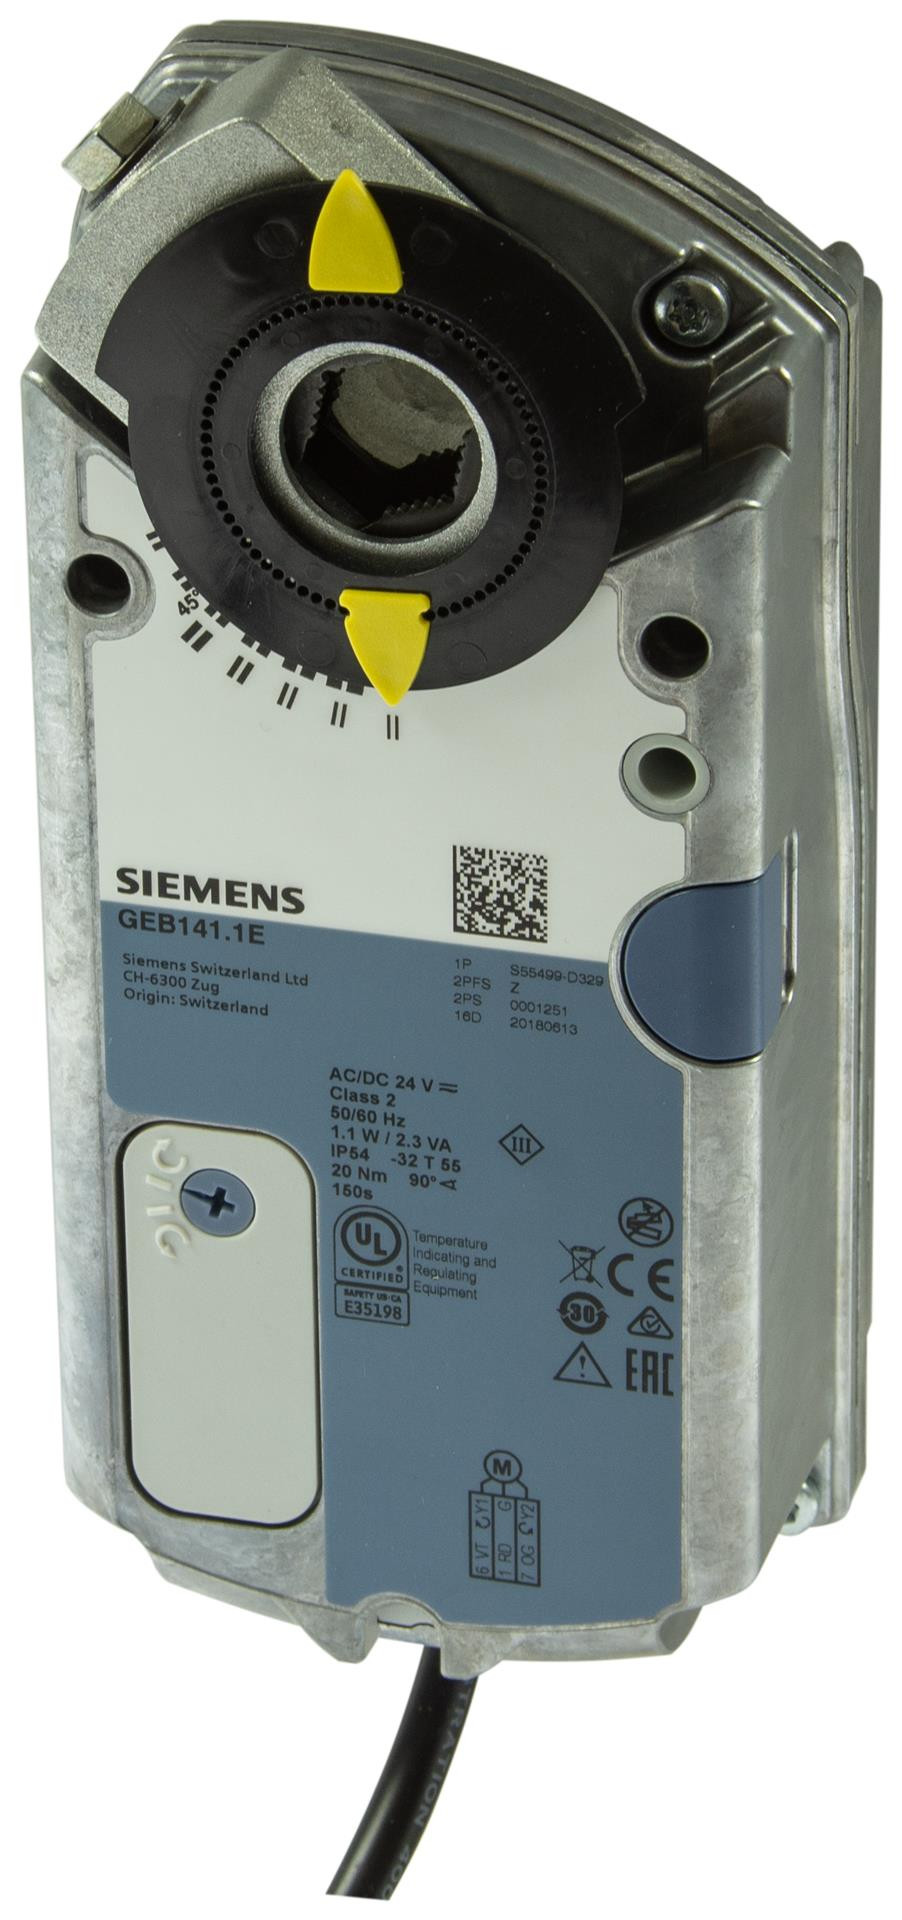 Siemens Luftklappen-Drehantriebe 20 Nm ohne Federrücklauf GEB142.1E